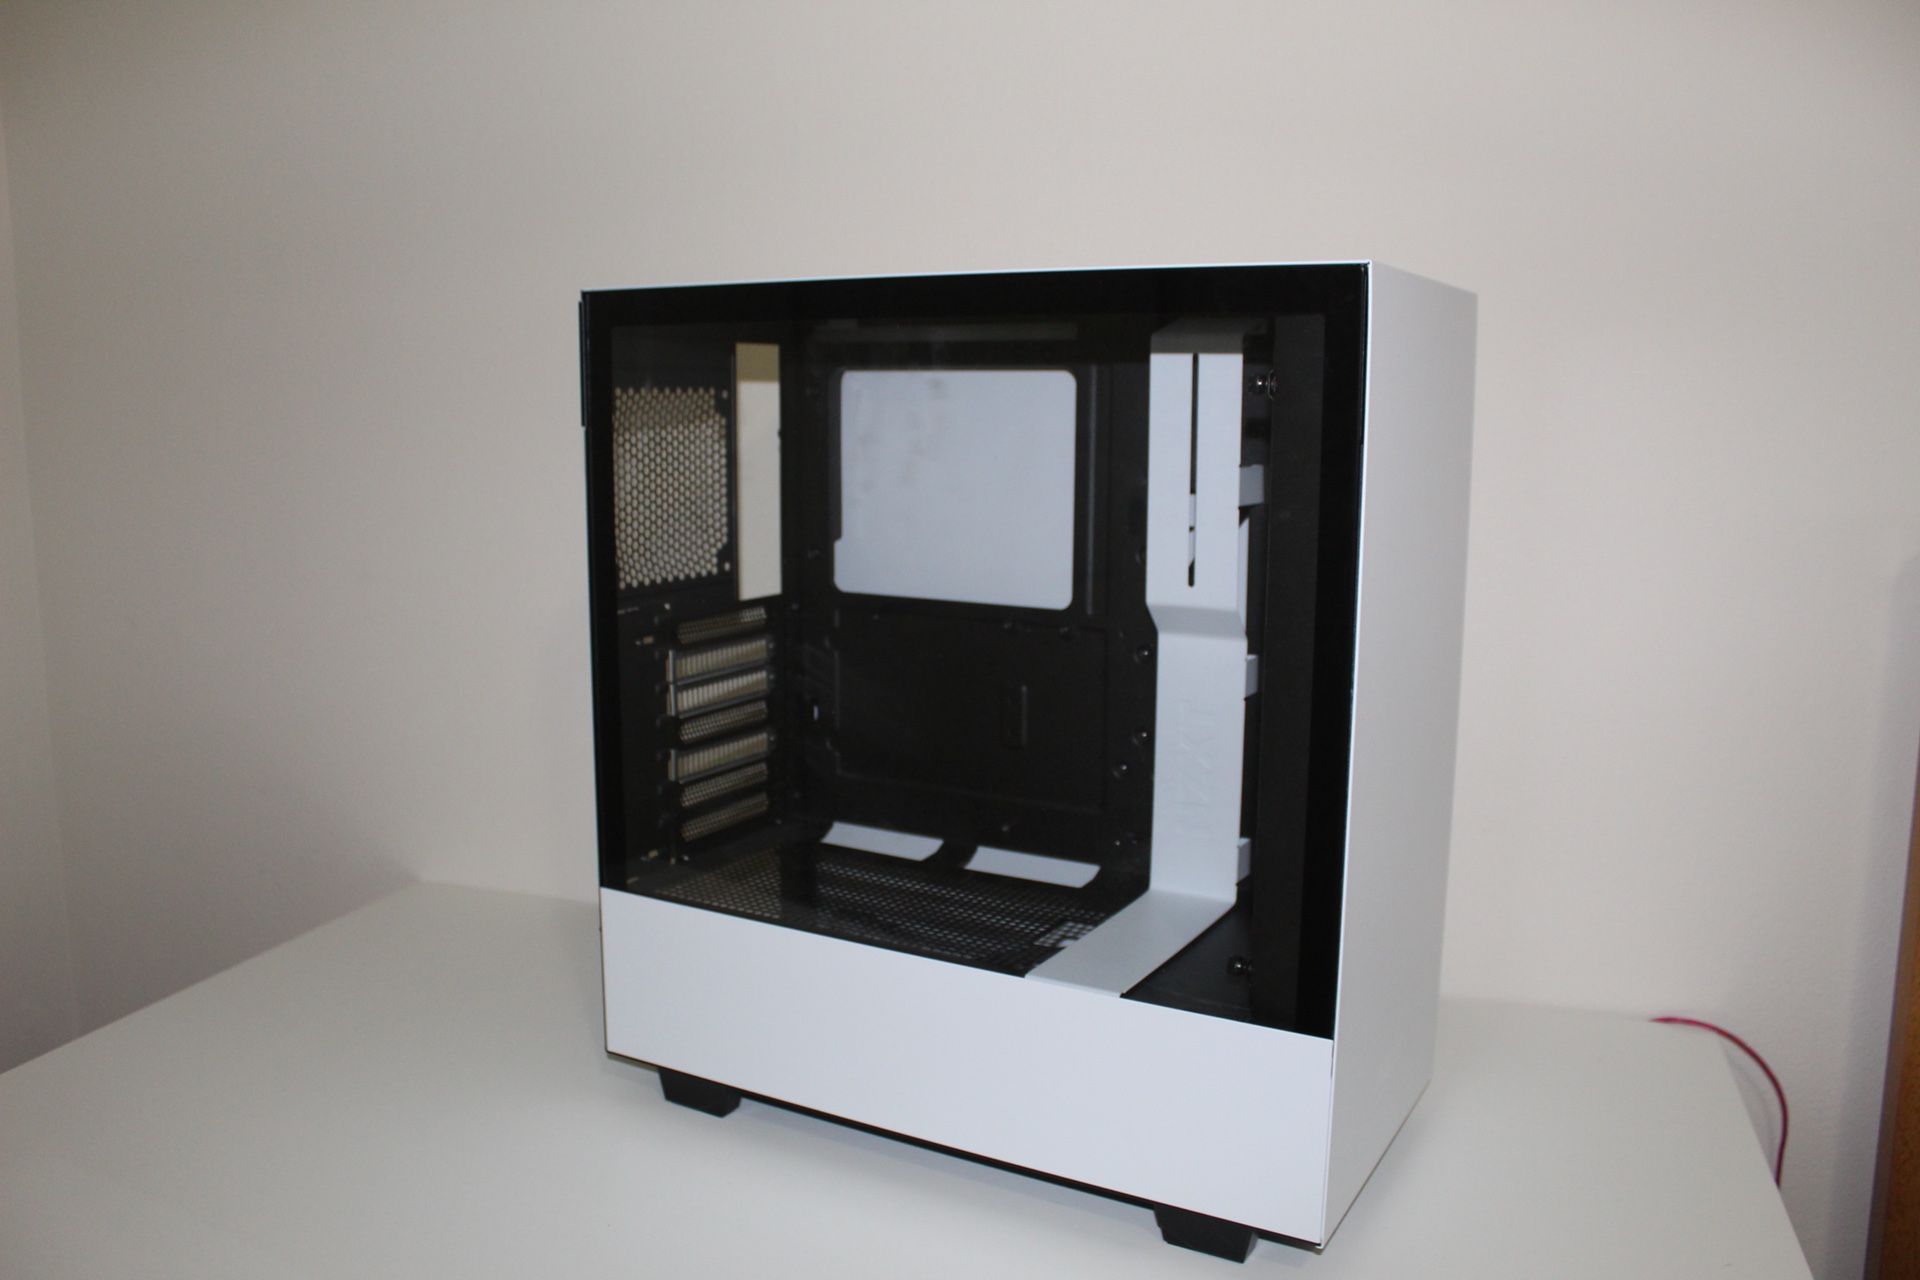 NZXT H510, ATX PC case